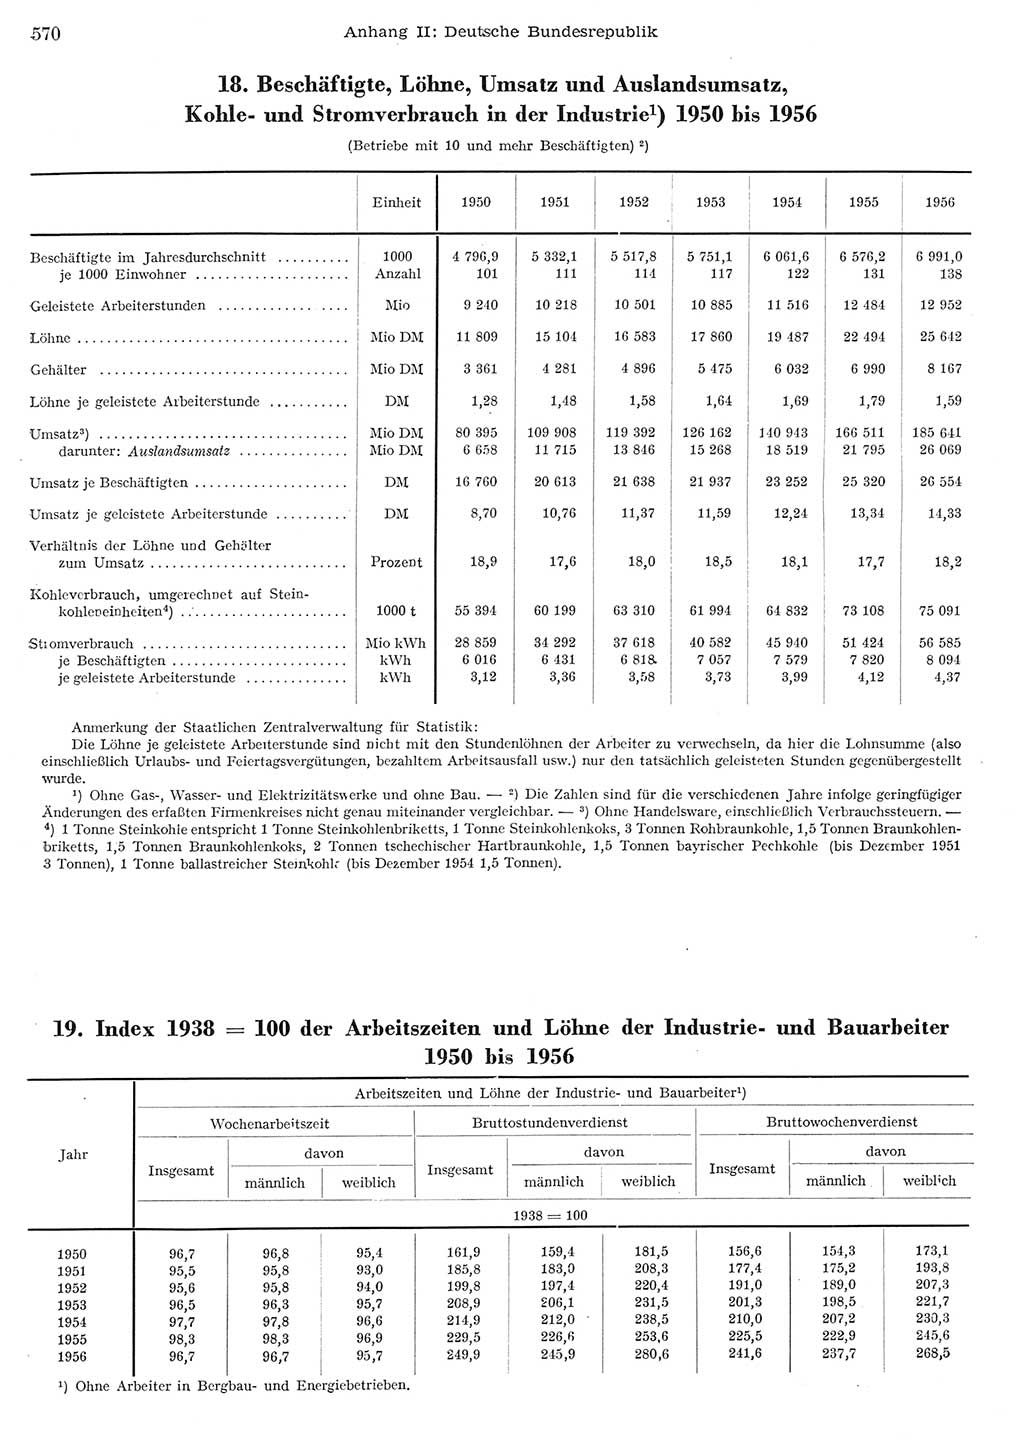 Statistisches Jahrbuch der Deutschen Demokratischen Republik (DDR) 1956, Seite 570 (Stat. Jb. DDR 1956, S. 570)